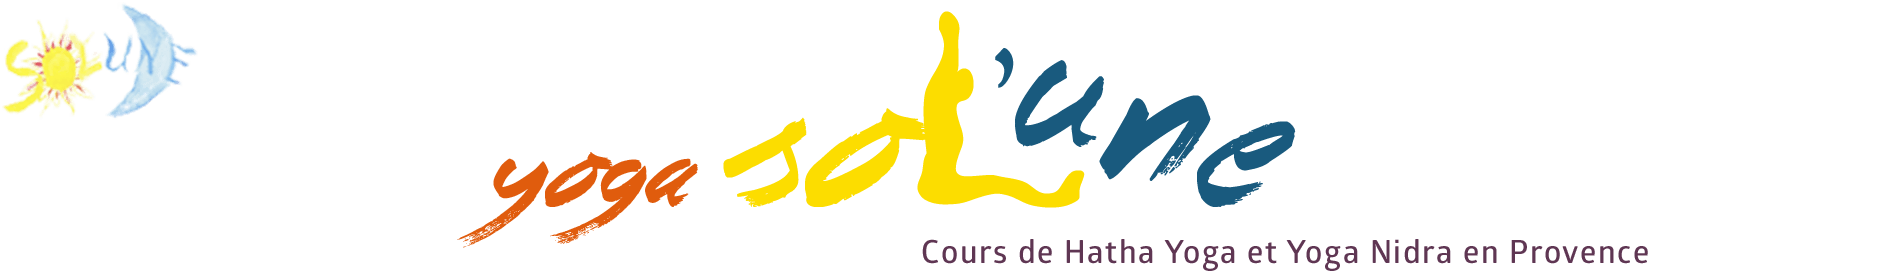 Association Sol'Une - Cours de Hatha Yoga et Yoga Nidra en Provence